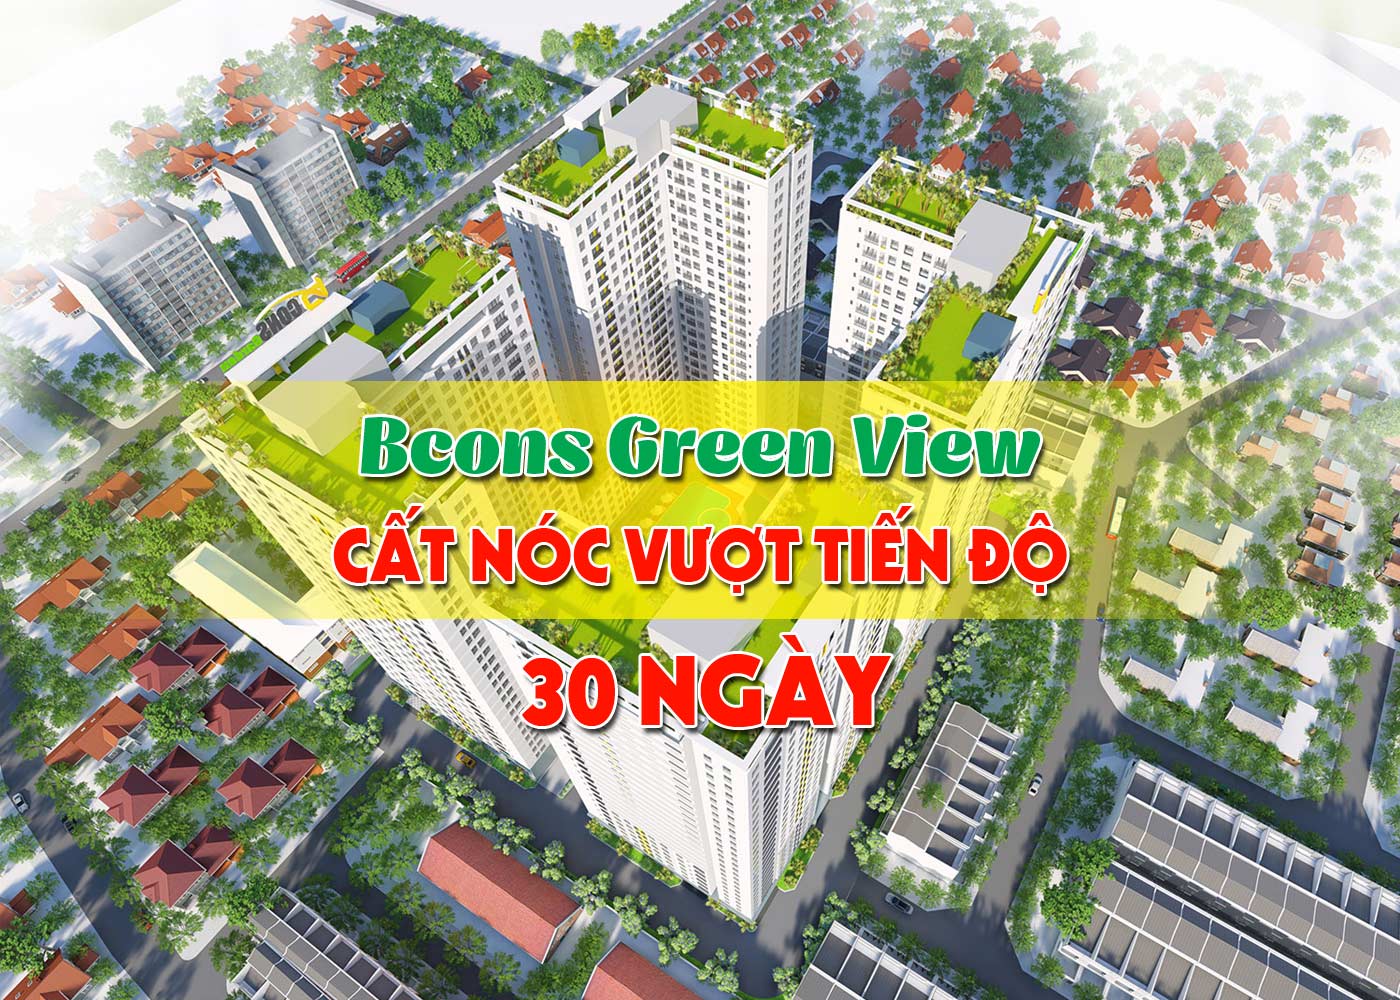 Bcons Green View cất nóc vượt tiến độ 30 ngày - Ảnh 1